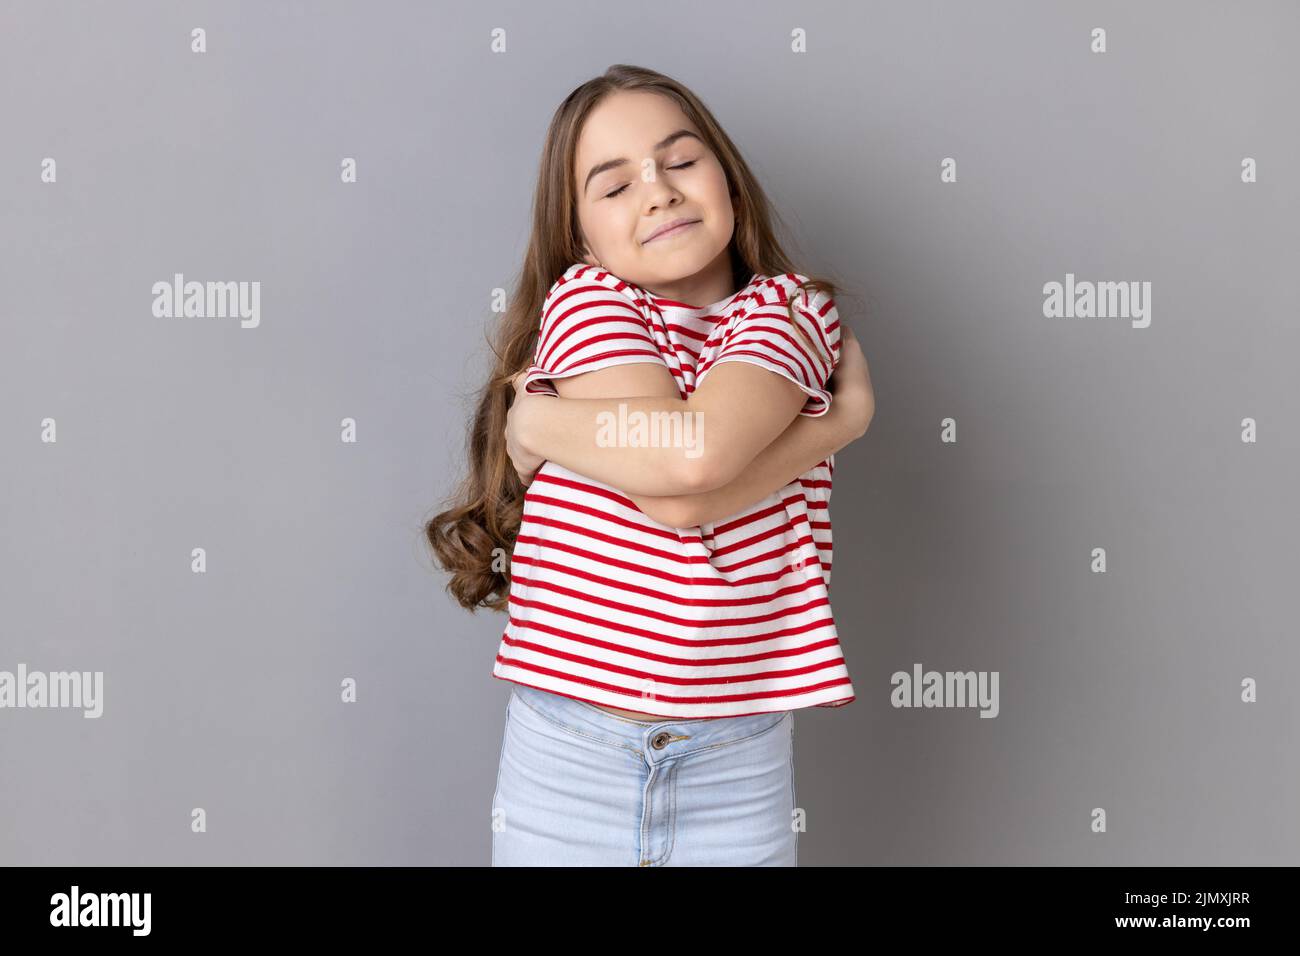 Ich liebe mich. Porträt eines selbstzufriedenen egoistischen kleinen Mädchens mit gestreiftem T-Shirt, das sich umarmt und mit Freude lächelt und sich selbststolz fühlt. Innenaufnahme des Studios isoliert auf grauem Hintergrund. Stockfoto